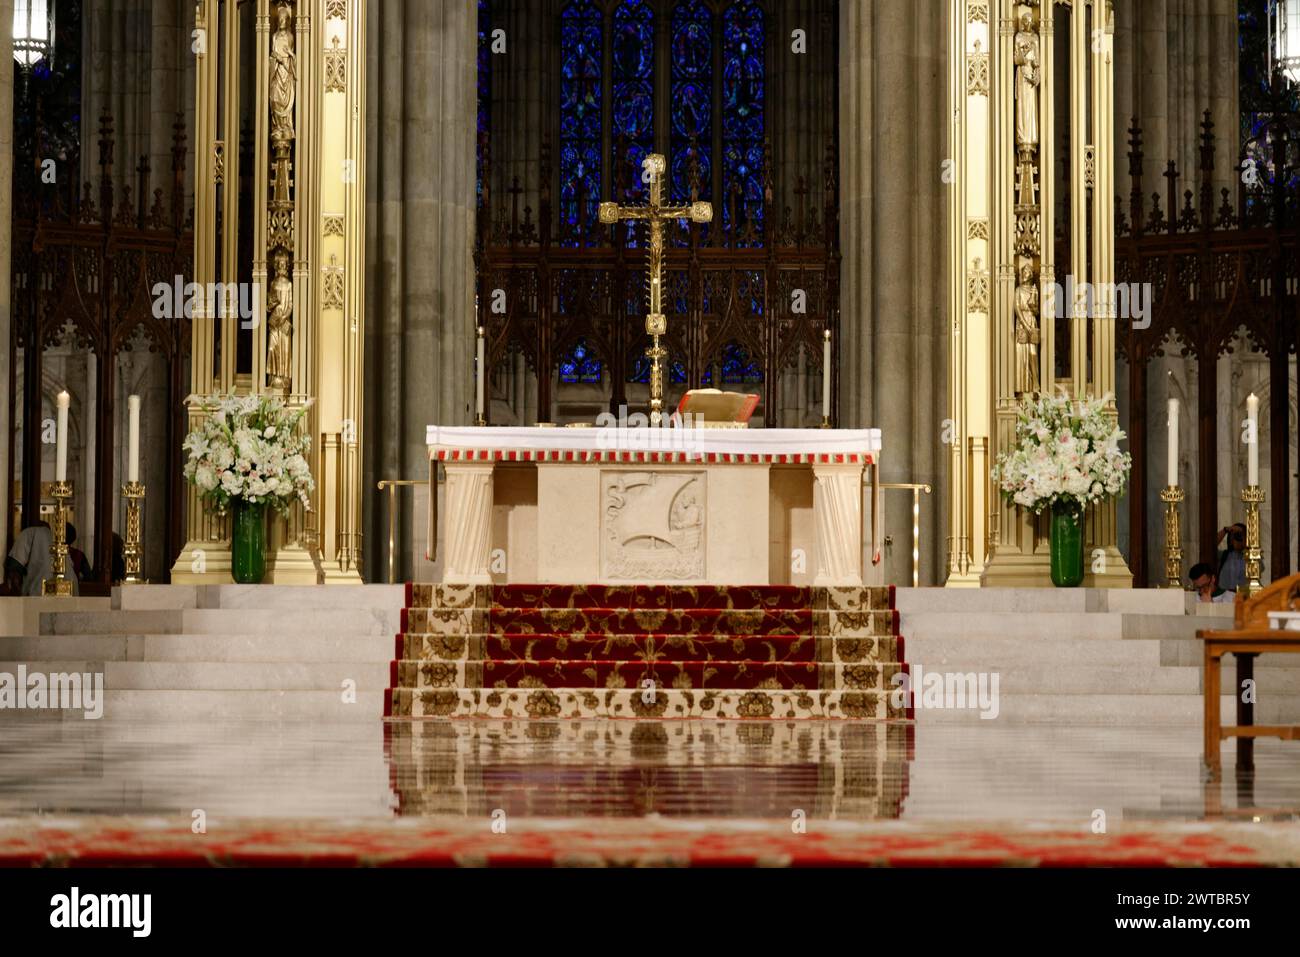 St. Patricks Old Cathedral oder Old St. Patricks, Lower Manhattan, Ein feierlich geschmückter Altar in einer Kathedrale mit eleganten Blumenakzenten, Manhattan Stockfoto